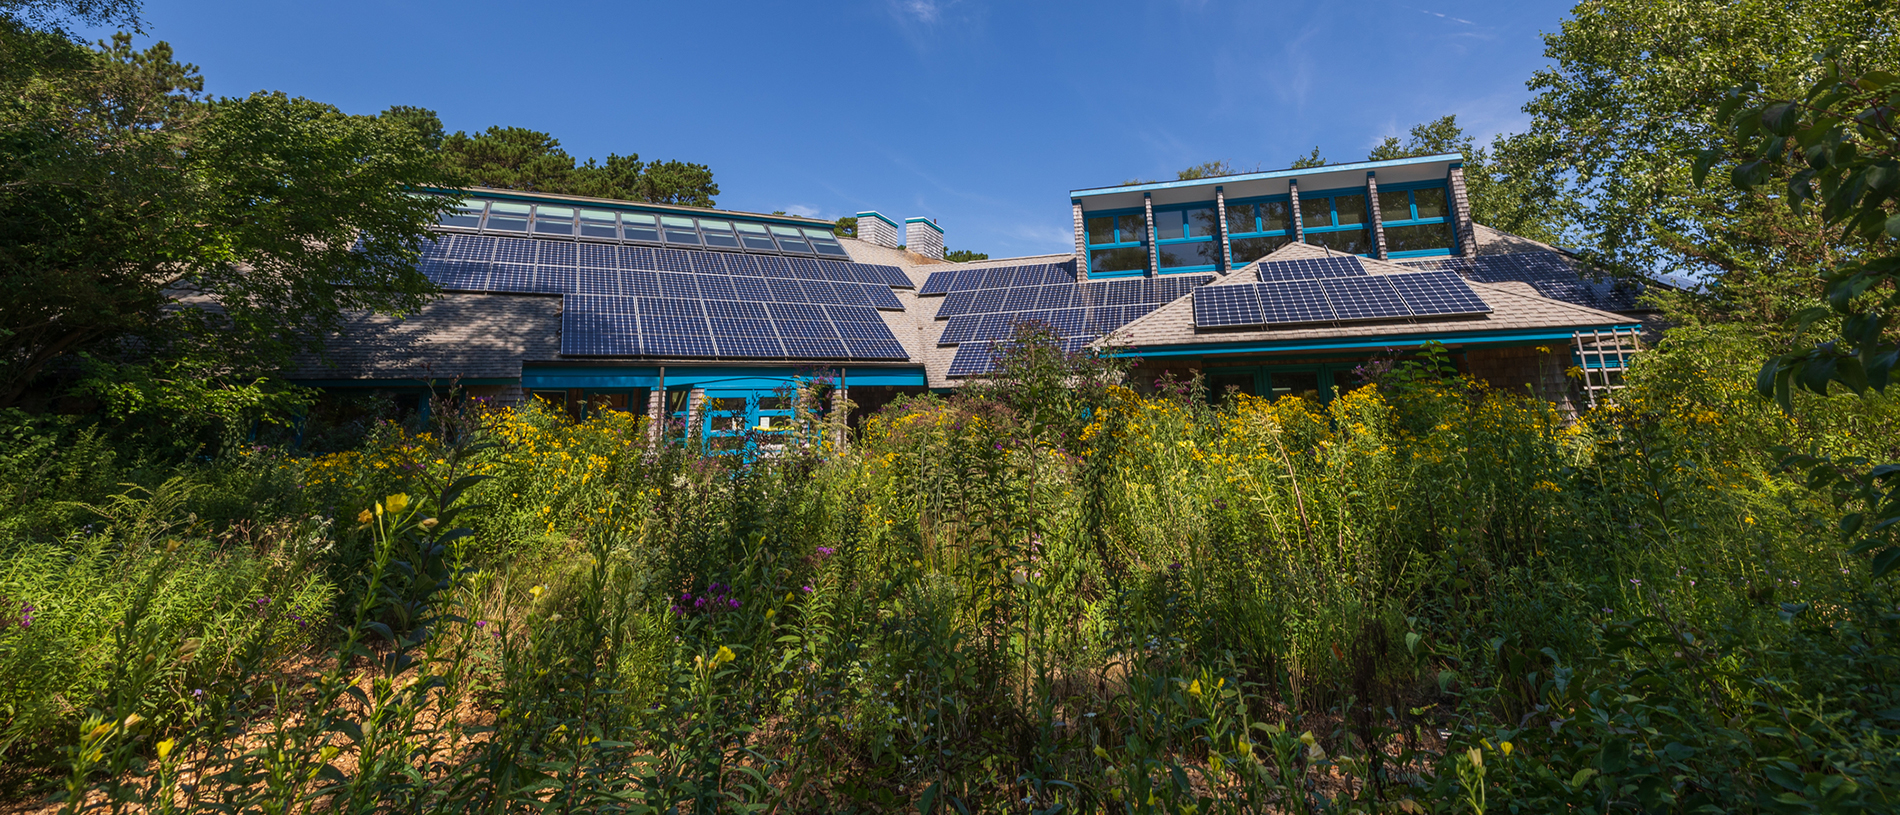 Wellfleet Nature Center with Solar Panels